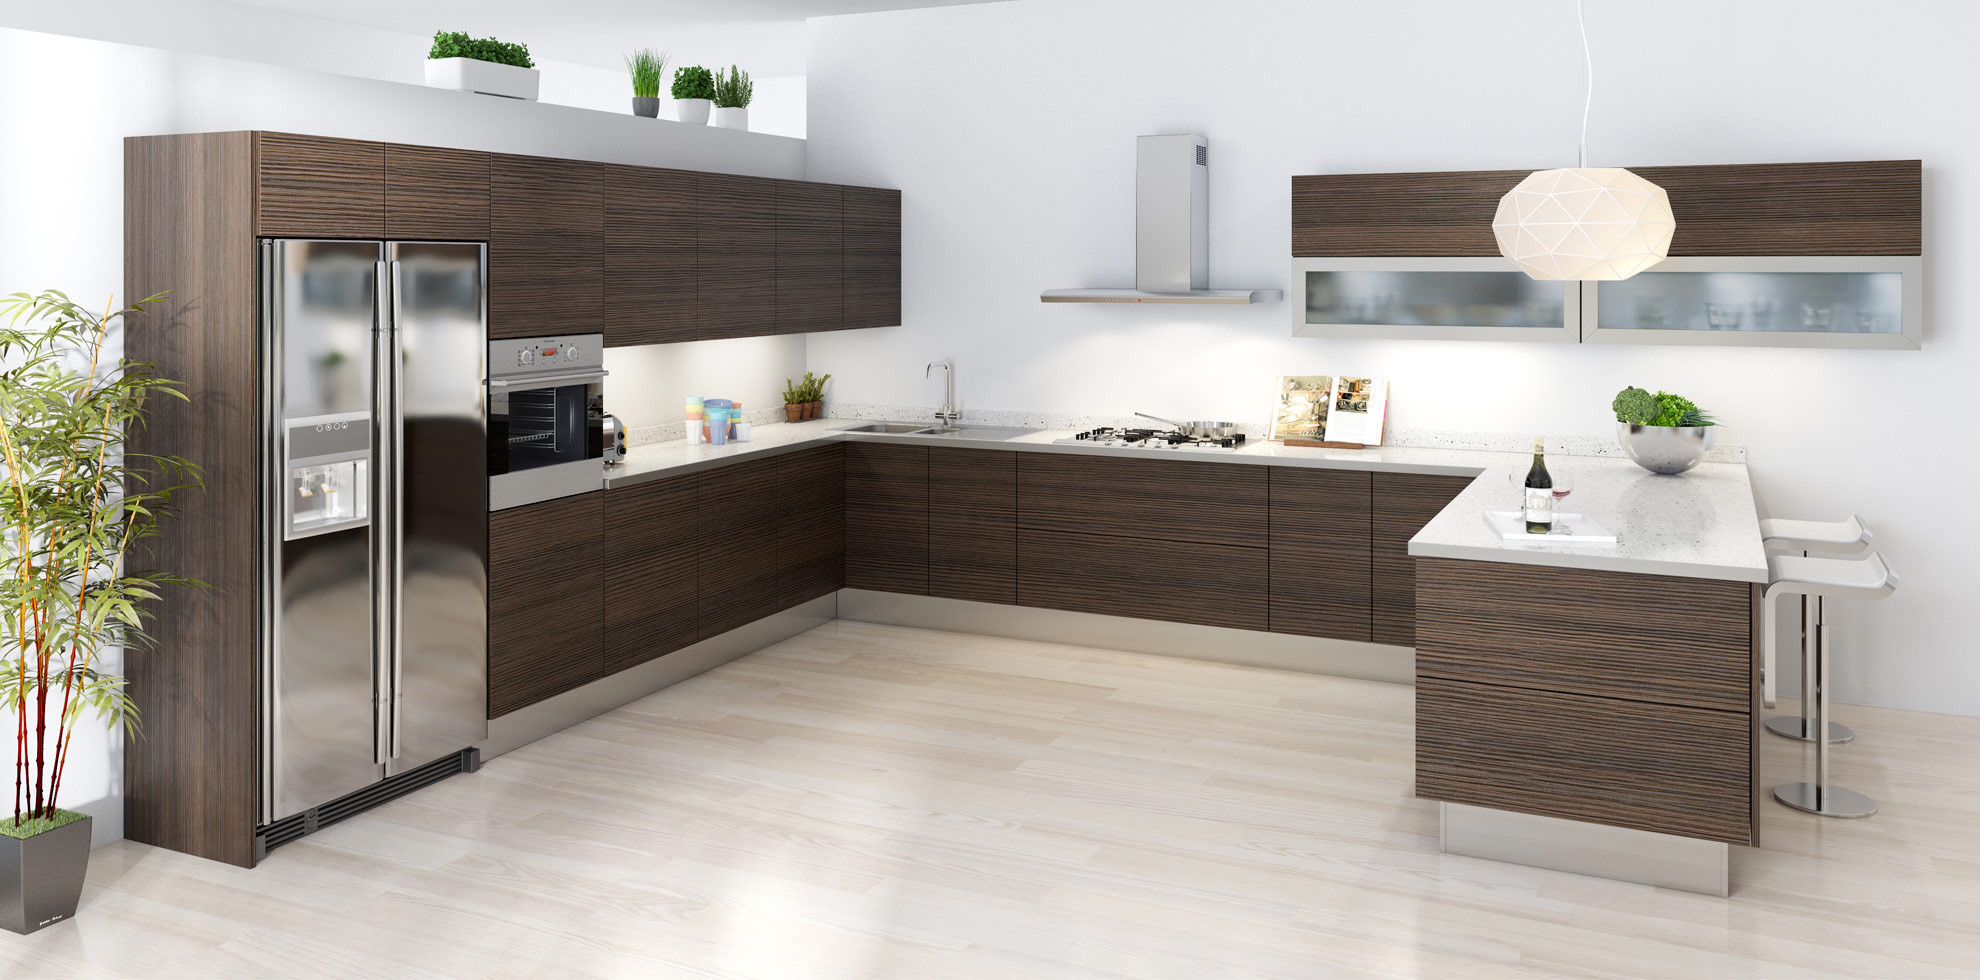 Modern Kitchen Cabinet Design Photos
 PRODUCT “Amacfi” Modern RTA Kitchen Cabinets online